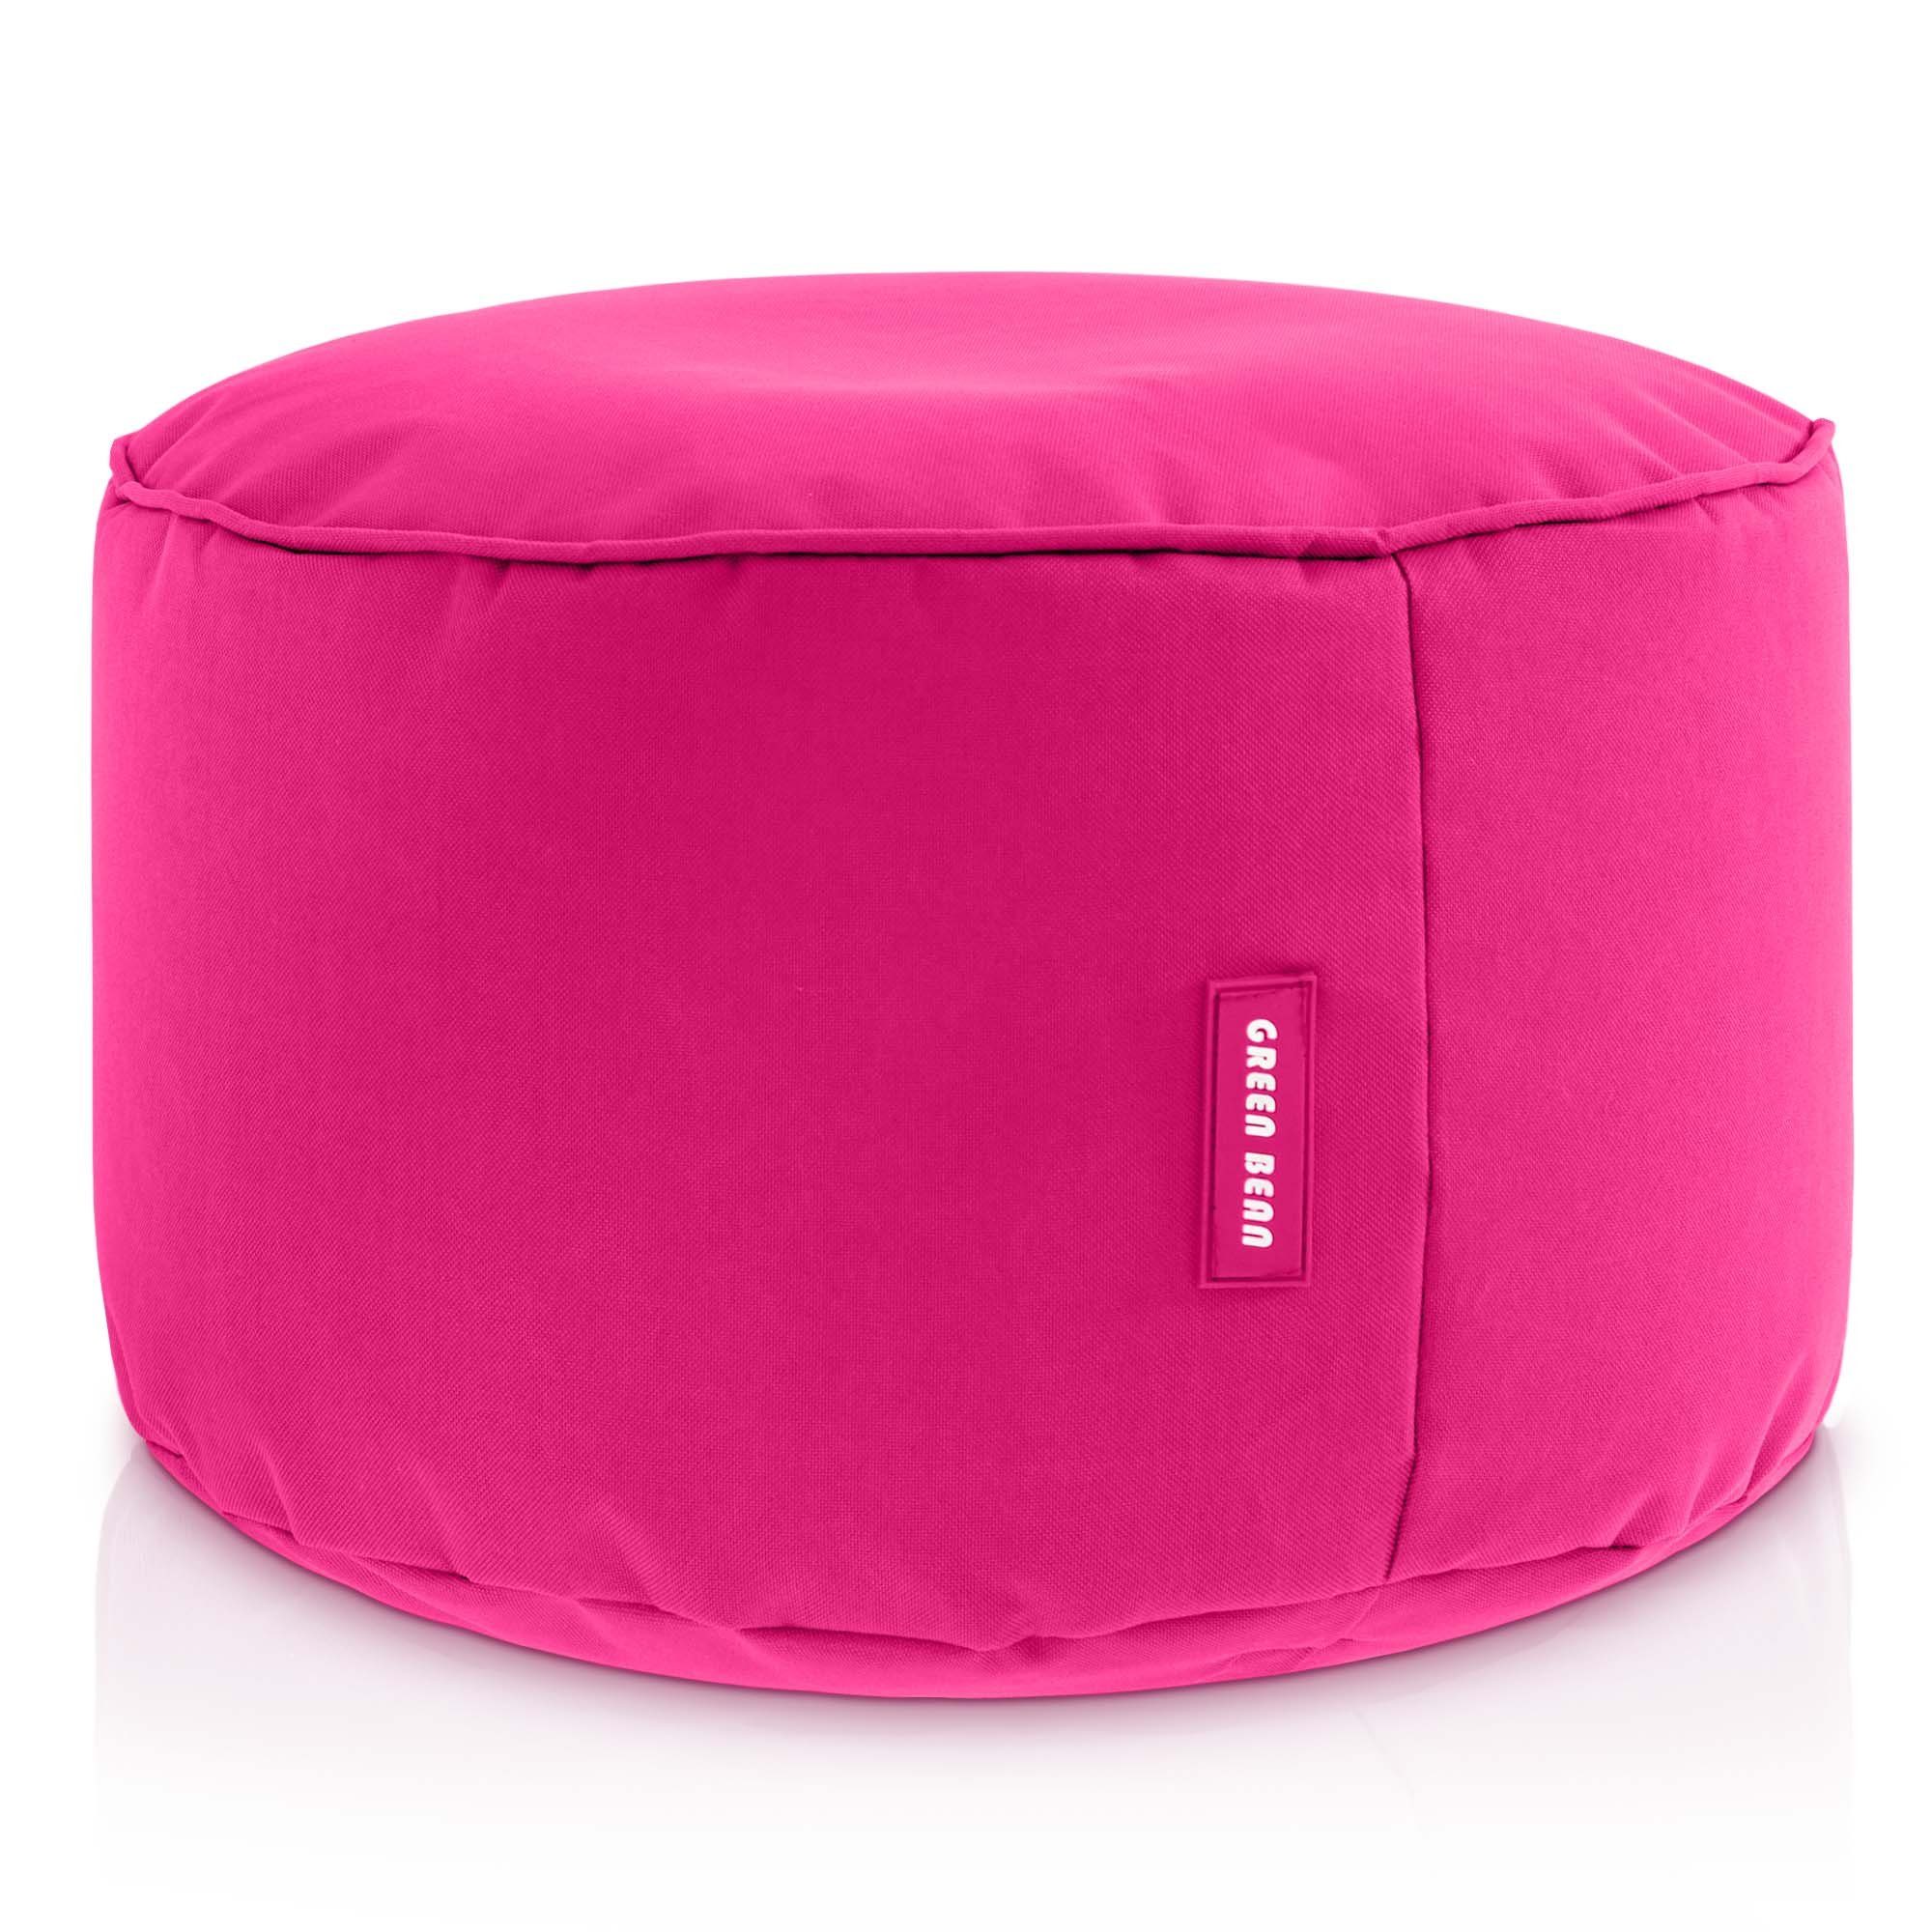 Green Bean Pouf Stay (Sitzsack-Hocker 25x45cm mit EPS-Perlen Füllung -, Fußhocker Fußkissen Sitz-Pouf für Sitzsäcke), Bodenkissen für Kinder und Erwachsene - Sitzkissen Sitzhocker Pink